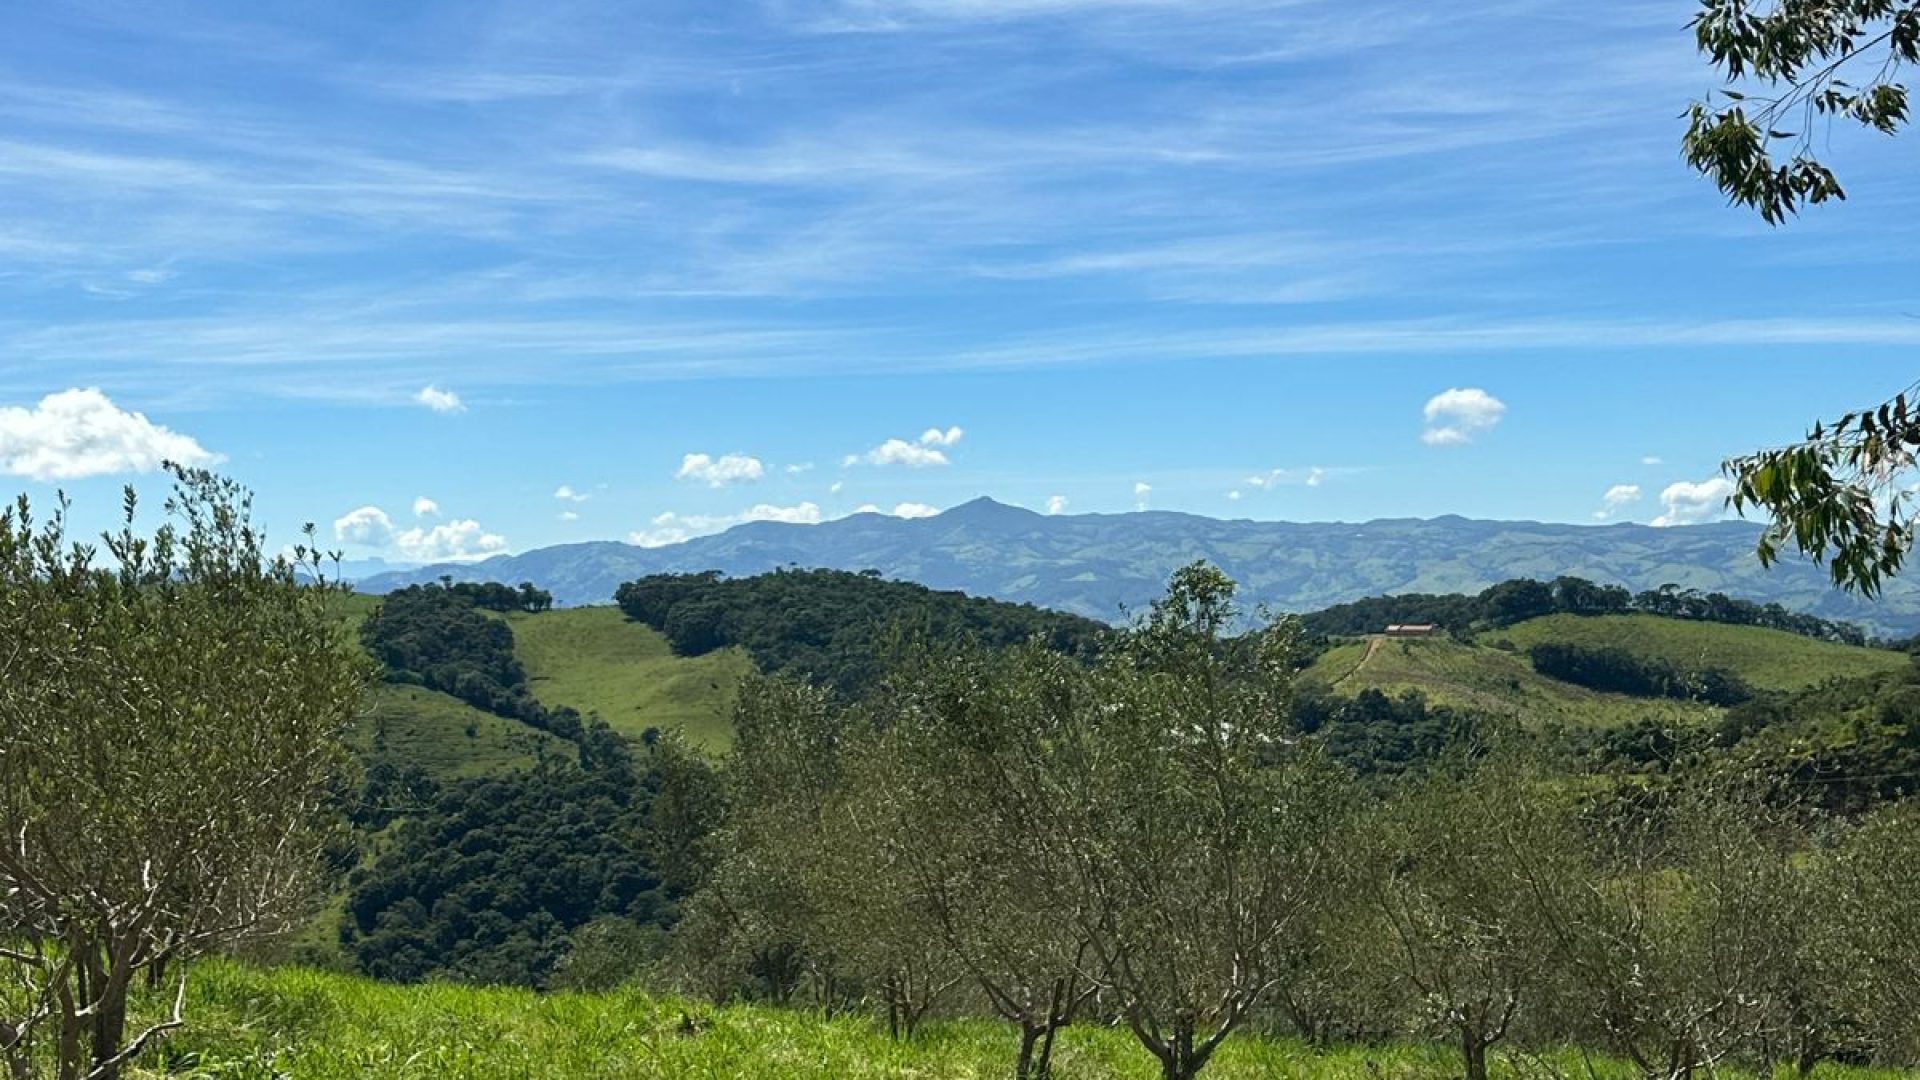 “Oportunidade Única: Terreno Rural de 44.000m² com Oliveiras e Vista de Cartão Postal para a Serra da Mantiqueira!”